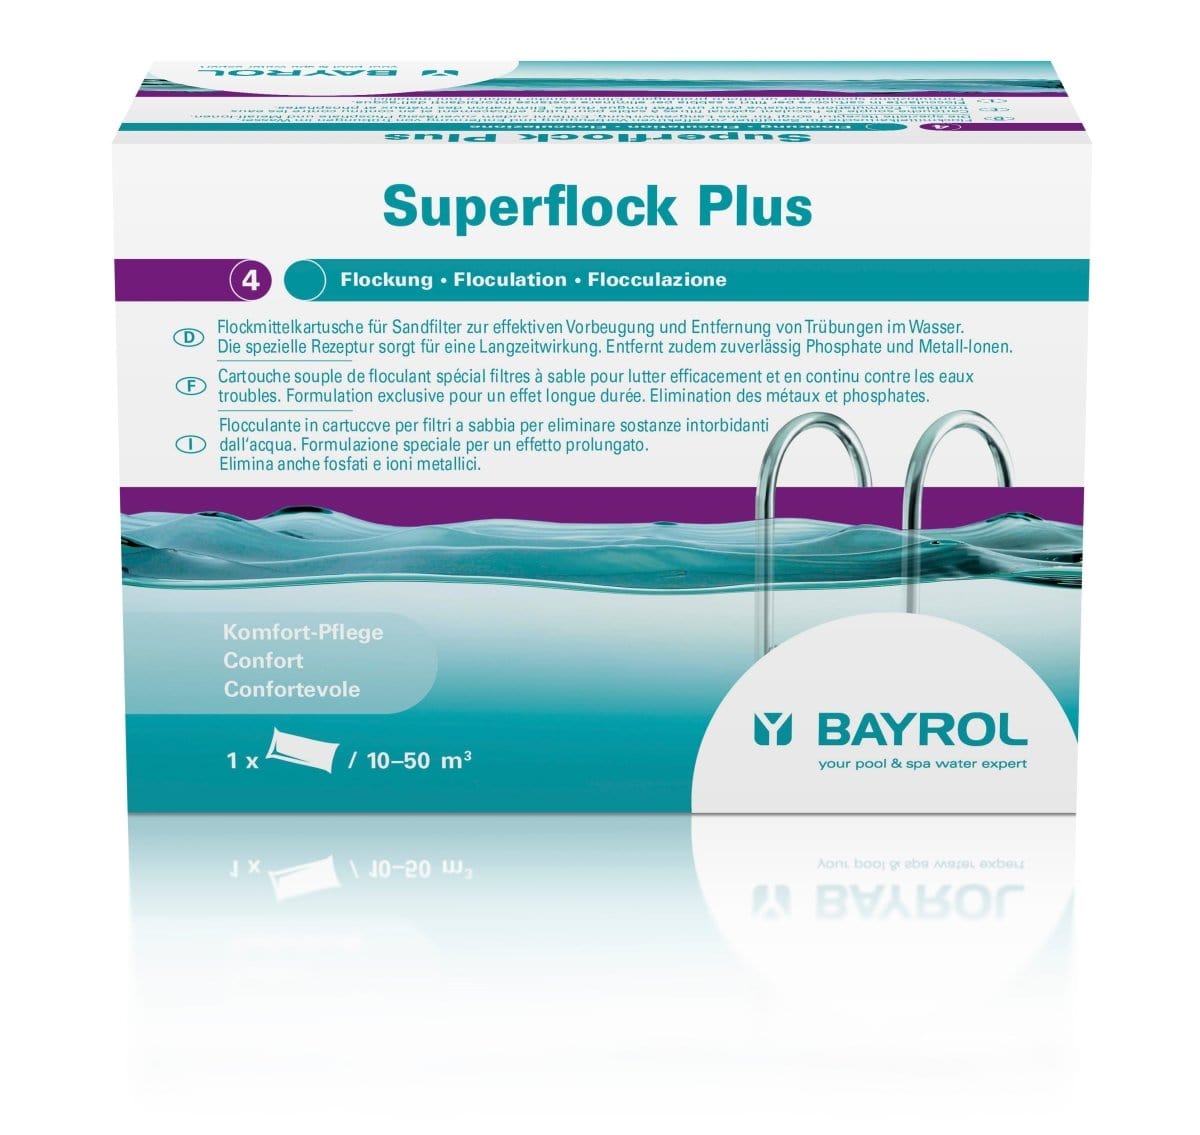 Superflock Plus - Poolstark.de